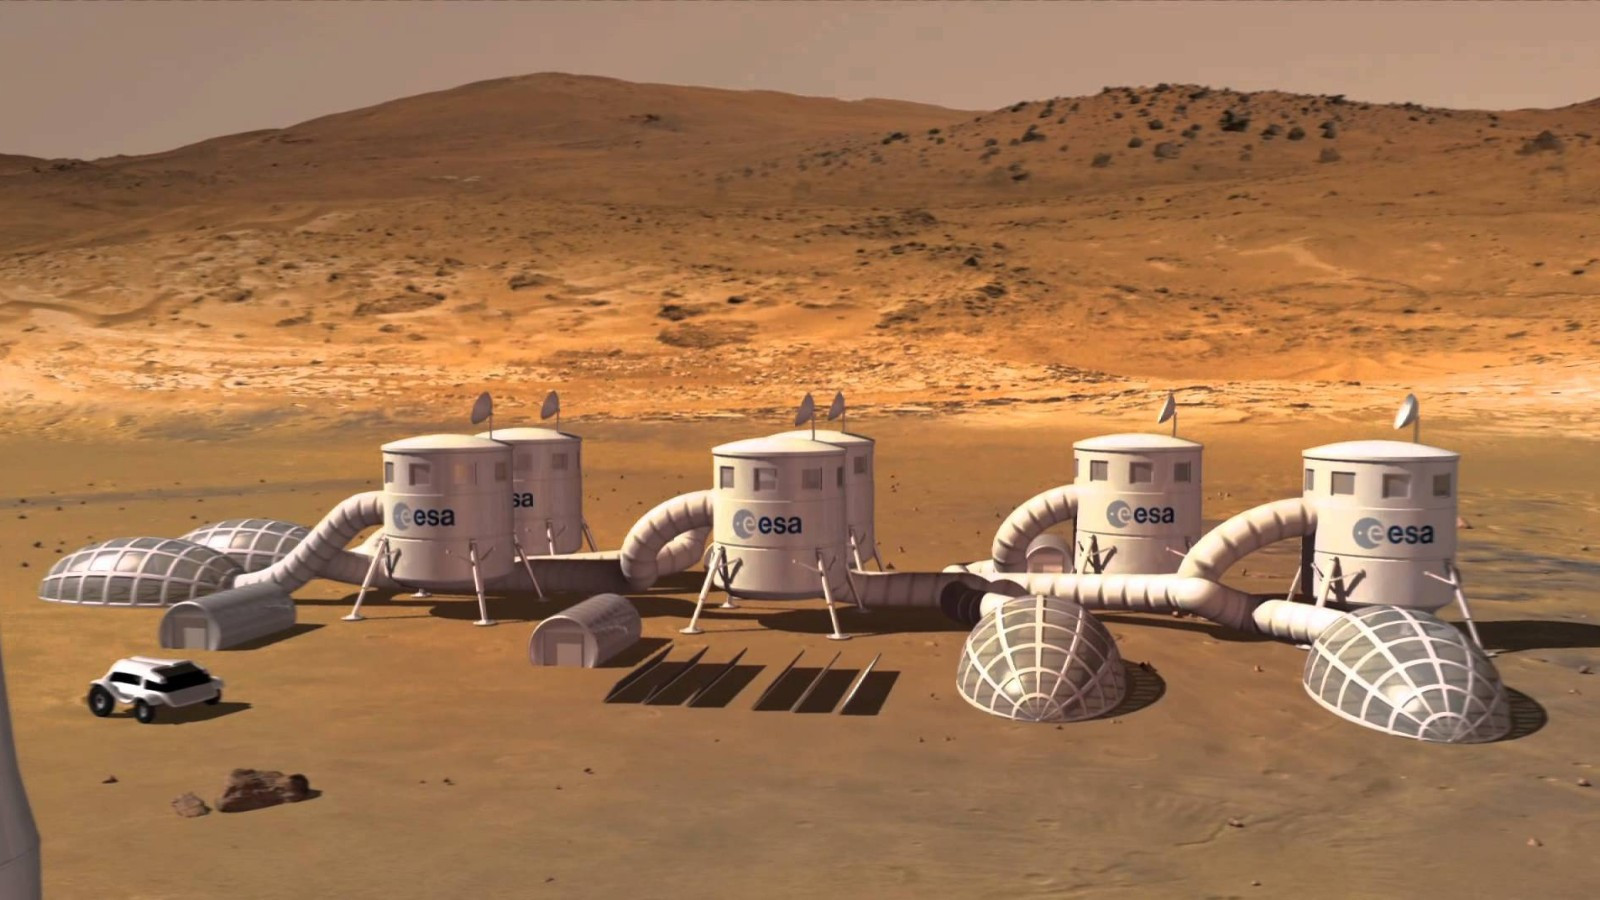 Через 100 лет мы переселимся на Марс